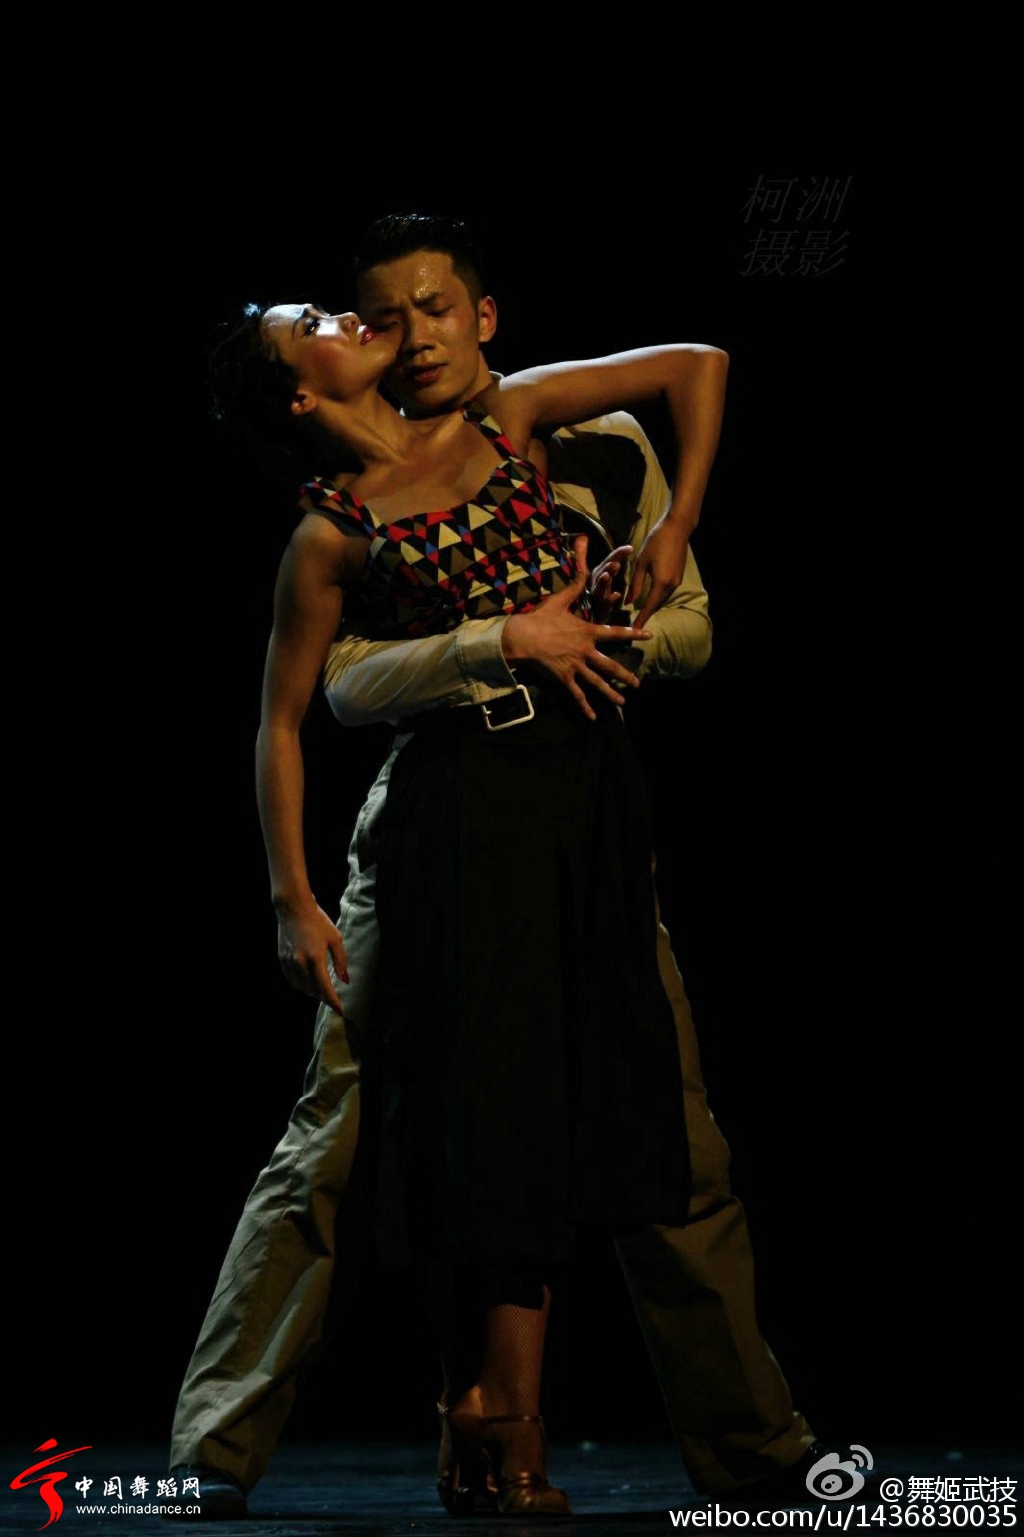 北京舞蹈学院社会舞蹈系2012级国标班毕业晚会18.jpg